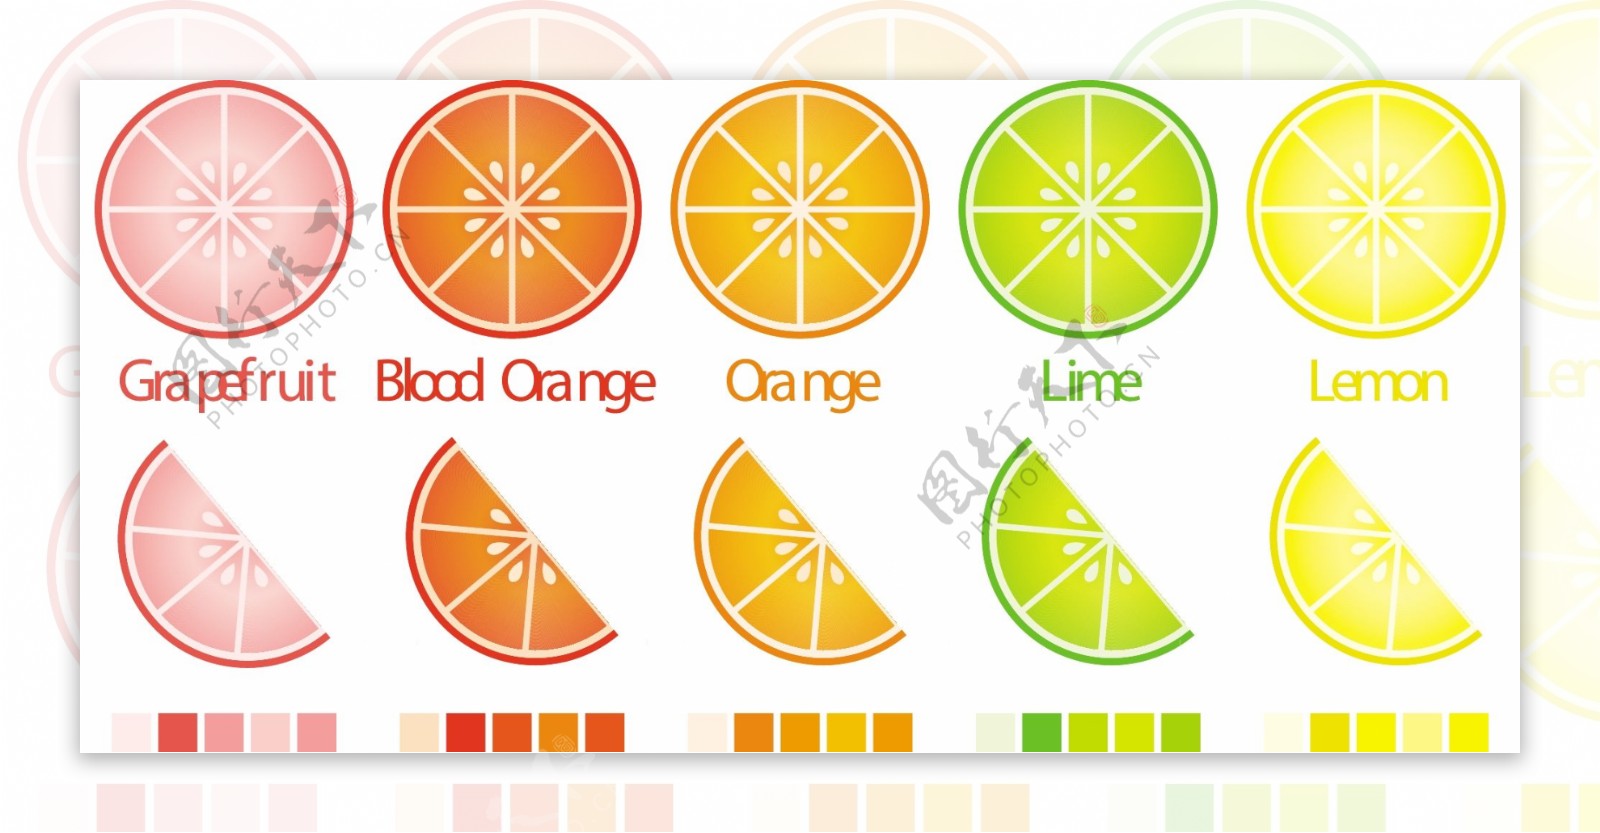 矢量格式的完整的样本柑橘切片和楔